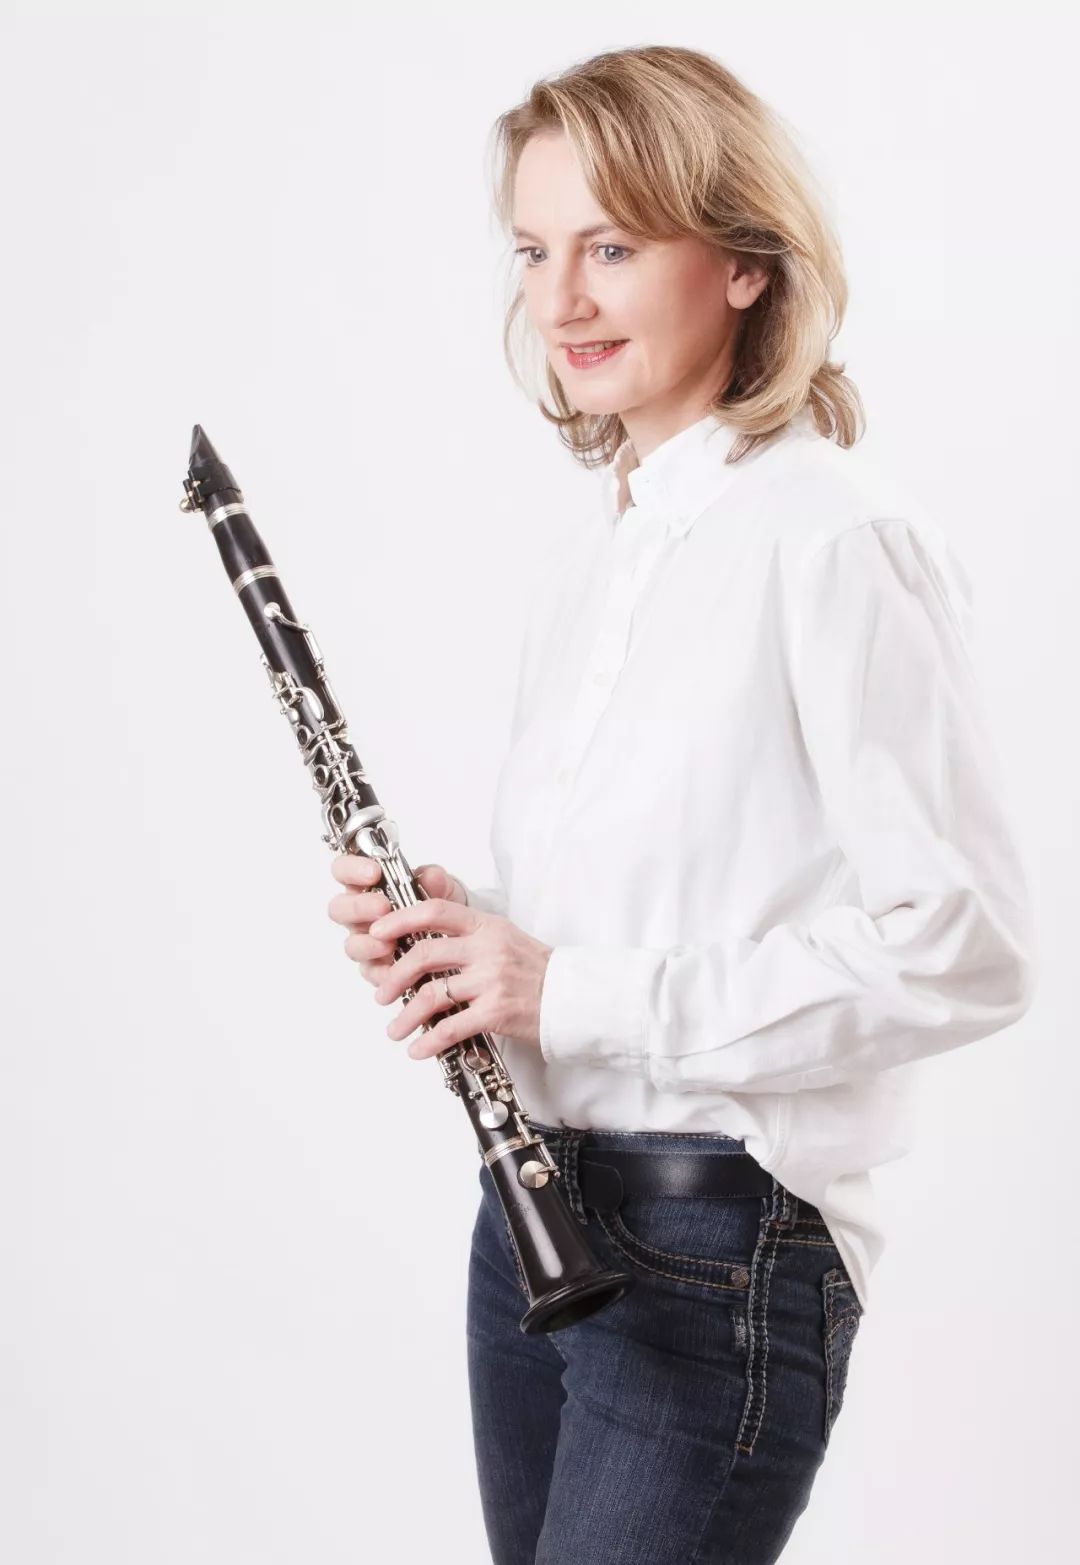 单簧管女皇萨宾娜梅耶60岁生日快乐